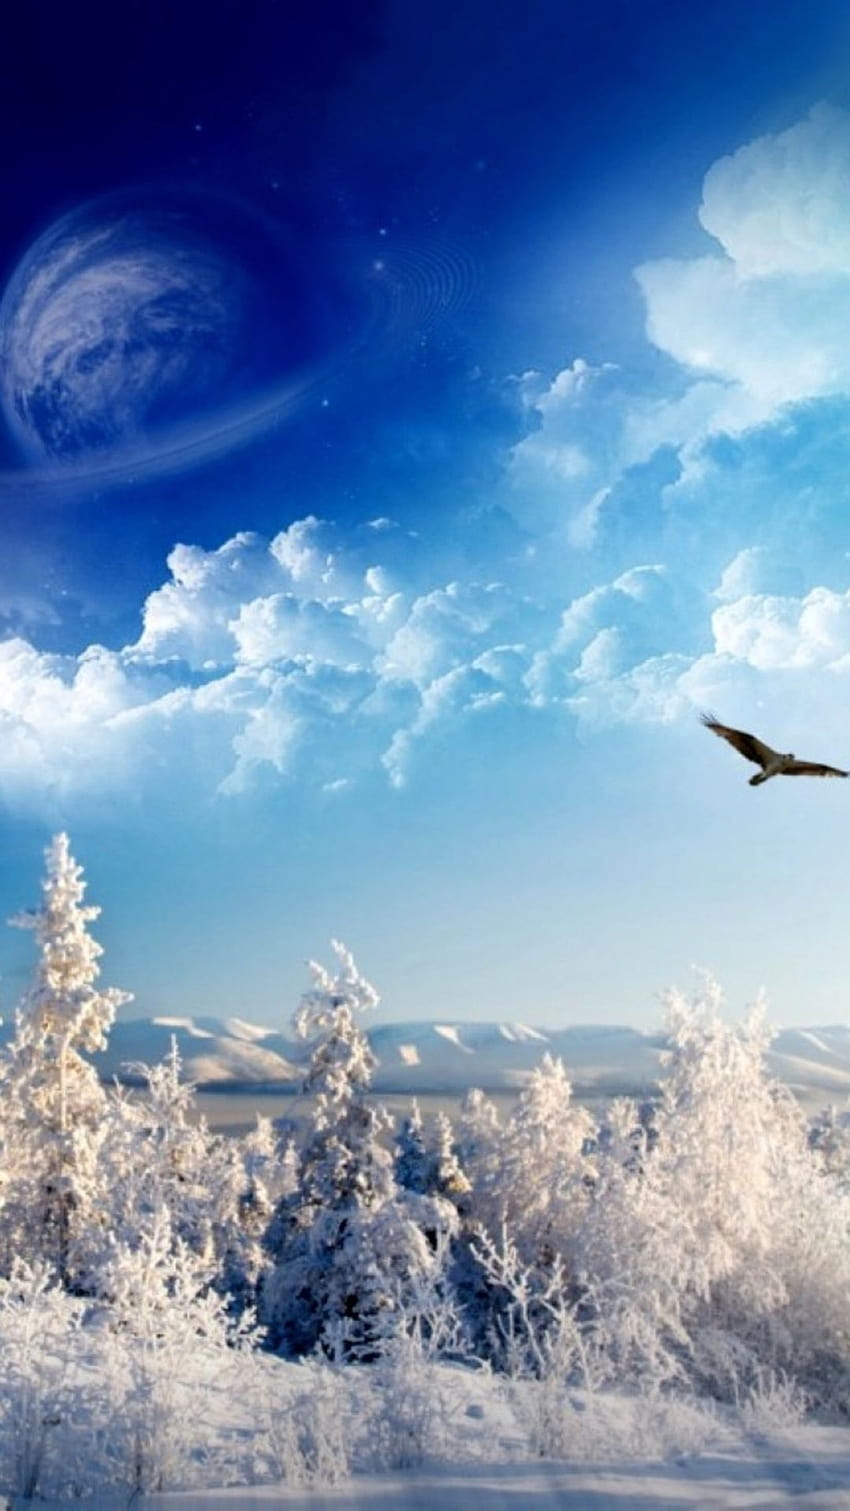 Winter Snowy Land: “Tận hưởng khung cảnh tuyệt đẹp của một mùa đông trắng xóa với bức ảnh Winter Snowy Land. Những tuyết rơi như những bông sương tuyệt đẹp, khiến cho mảnh đất này trở nên lãng mạn và mơ mộng. Xem ngay bức ảnh liên quan để cảm nhận tinh túy của mùa đông nhé!”